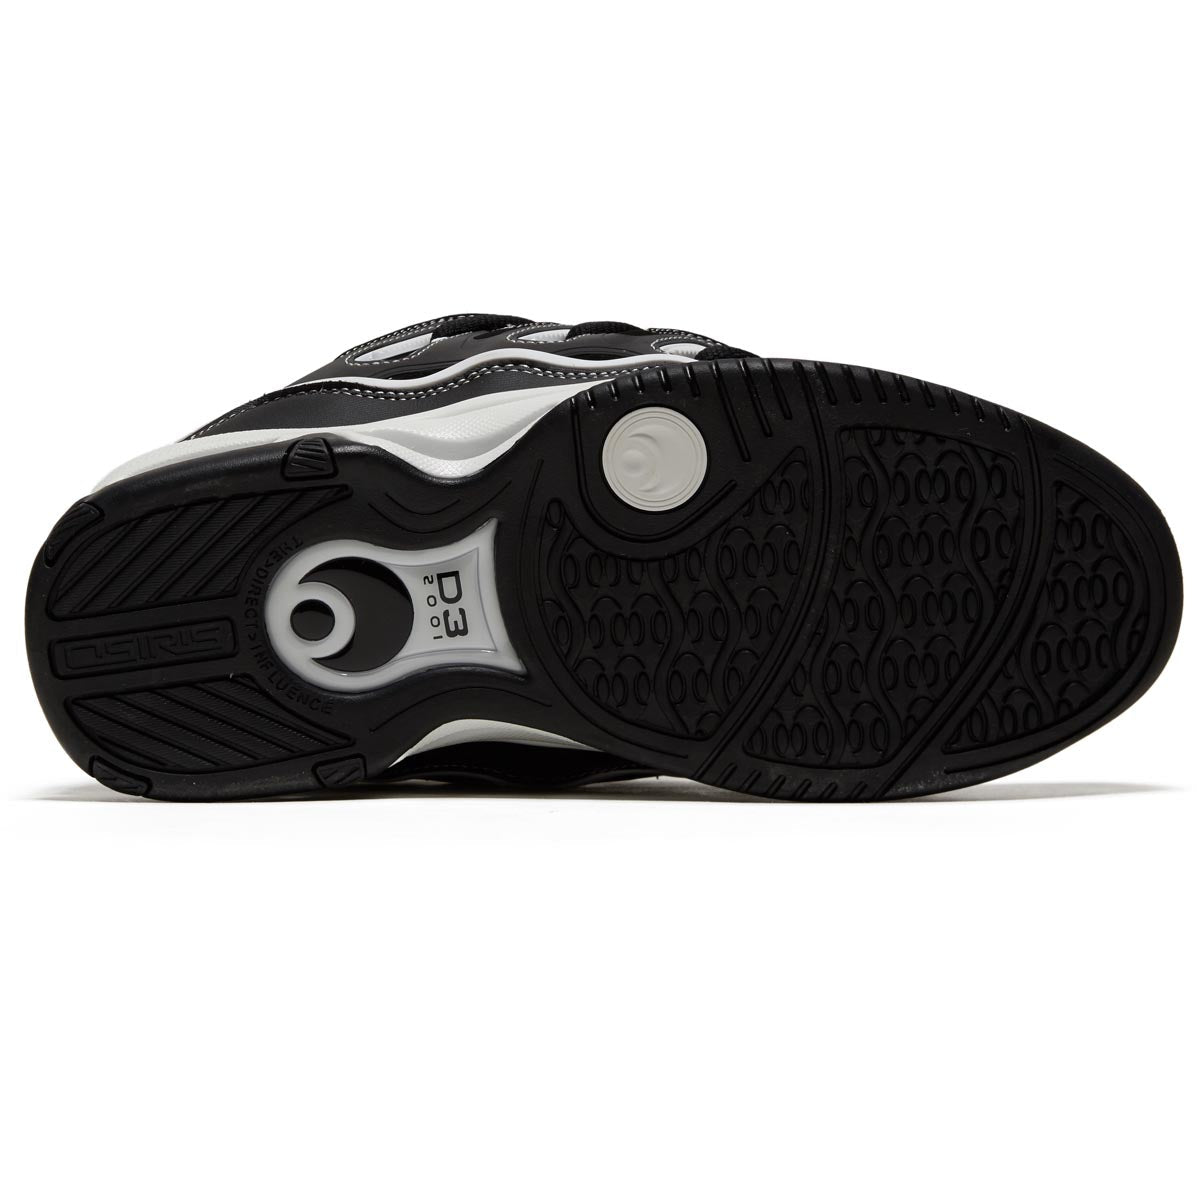 Osiris D3 2001 Shoes - Black/Black/White image 4